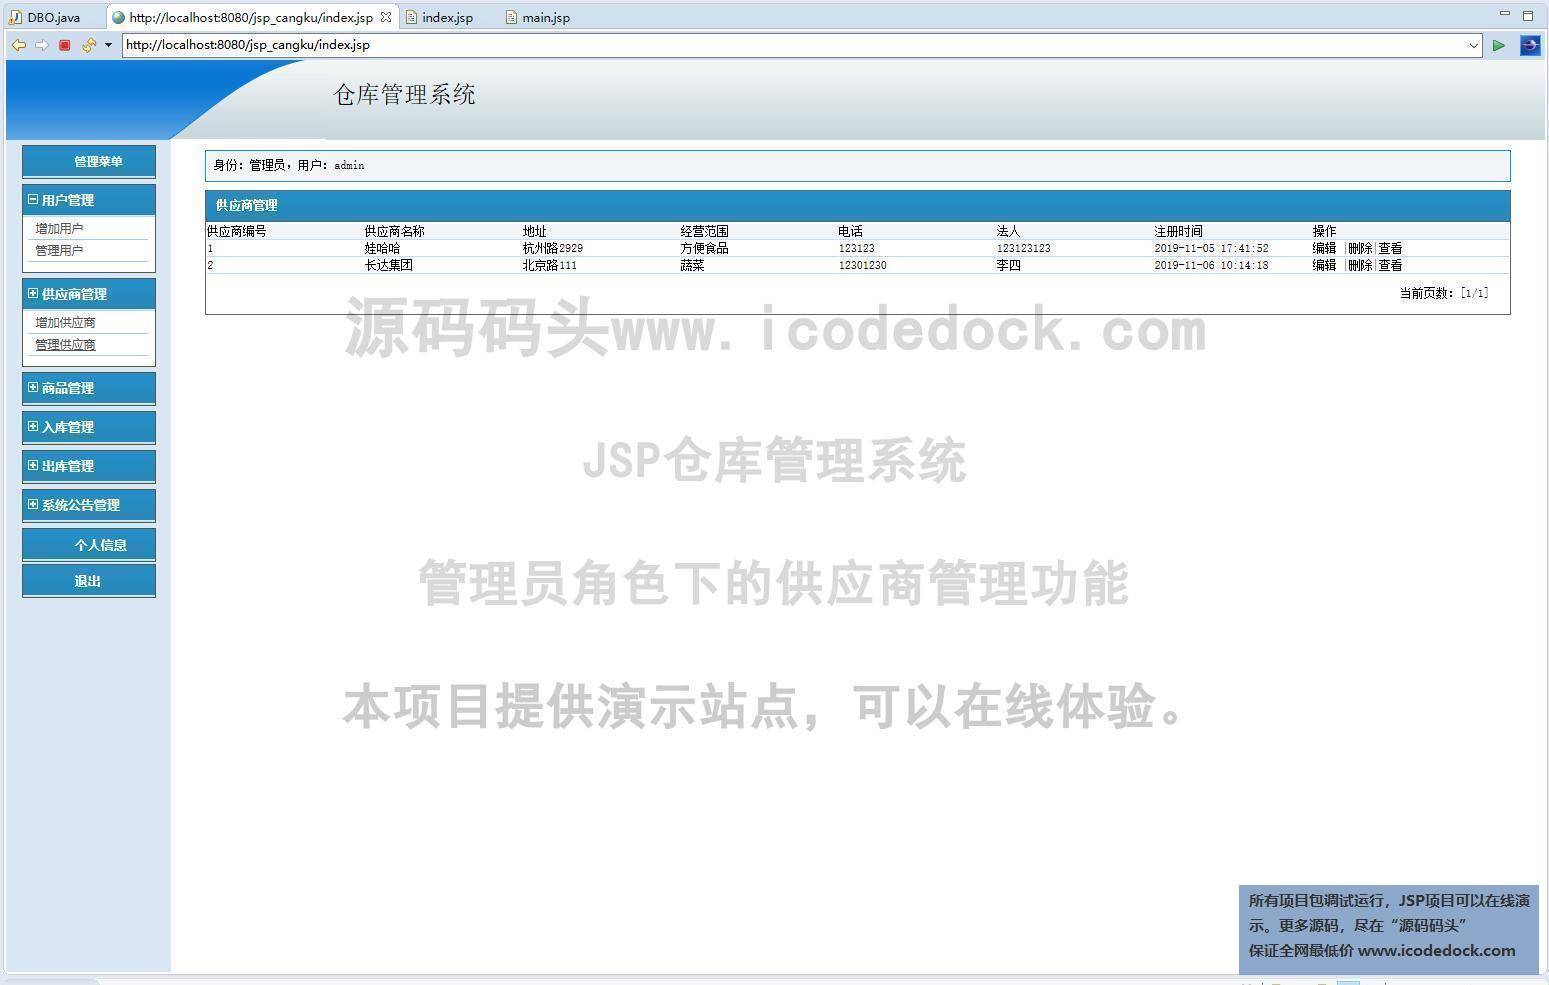 源码码头-JSP仓库管理系统-管理员角色-供应商管理